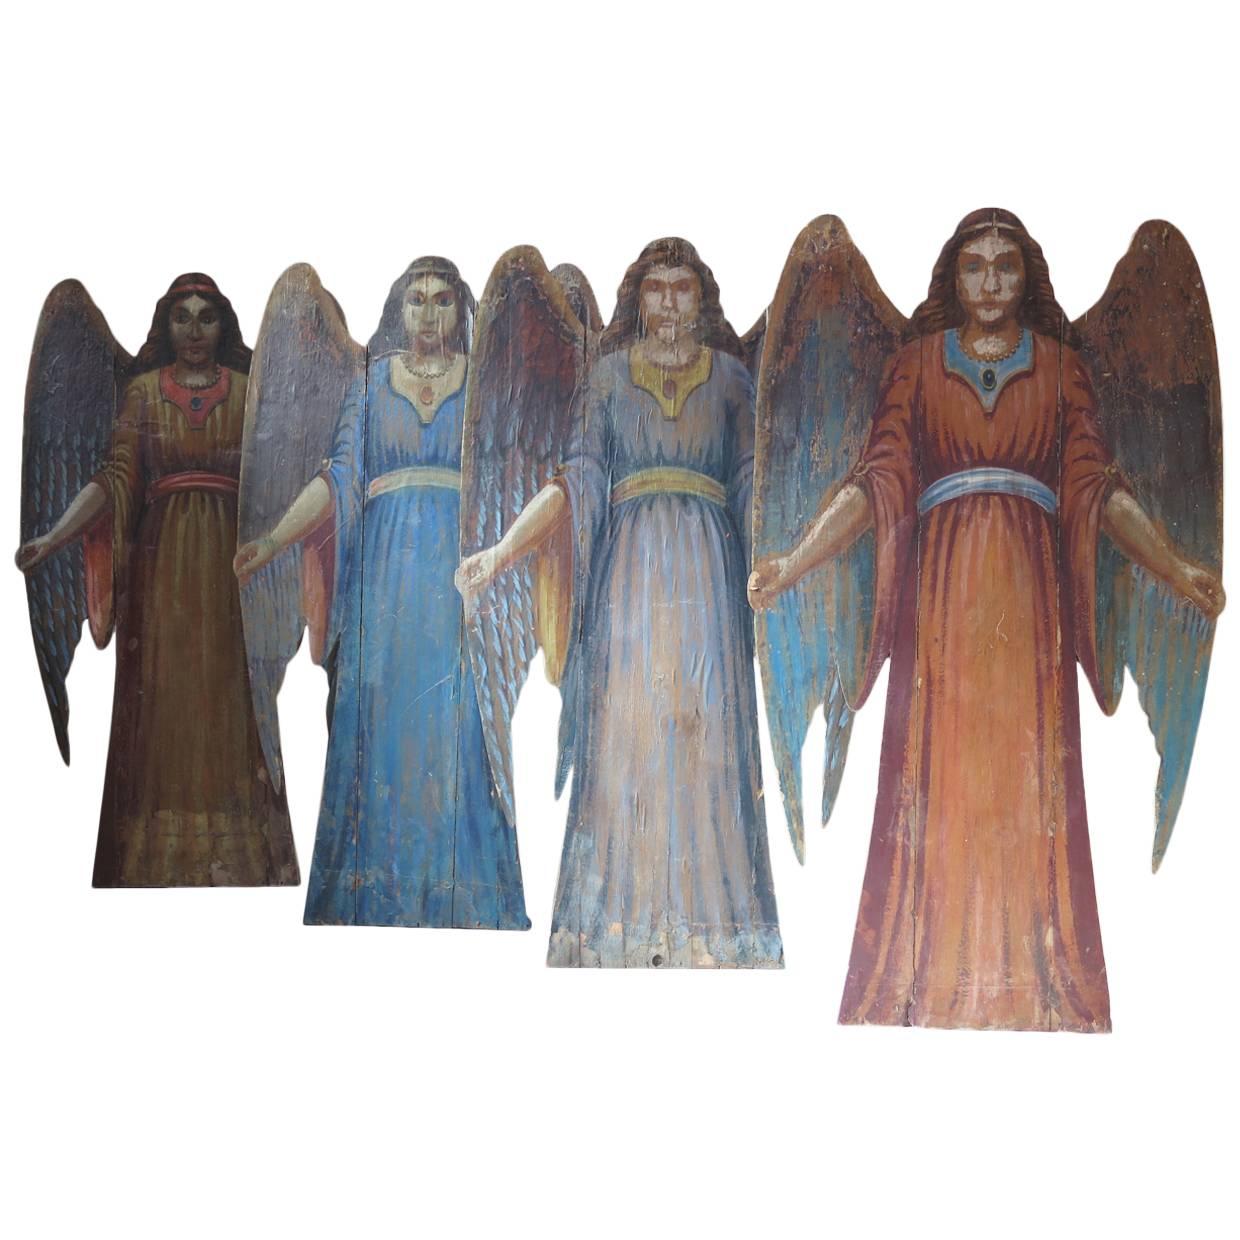 Cuatro ángeles italianos de 1850 de la decoración de un teatro